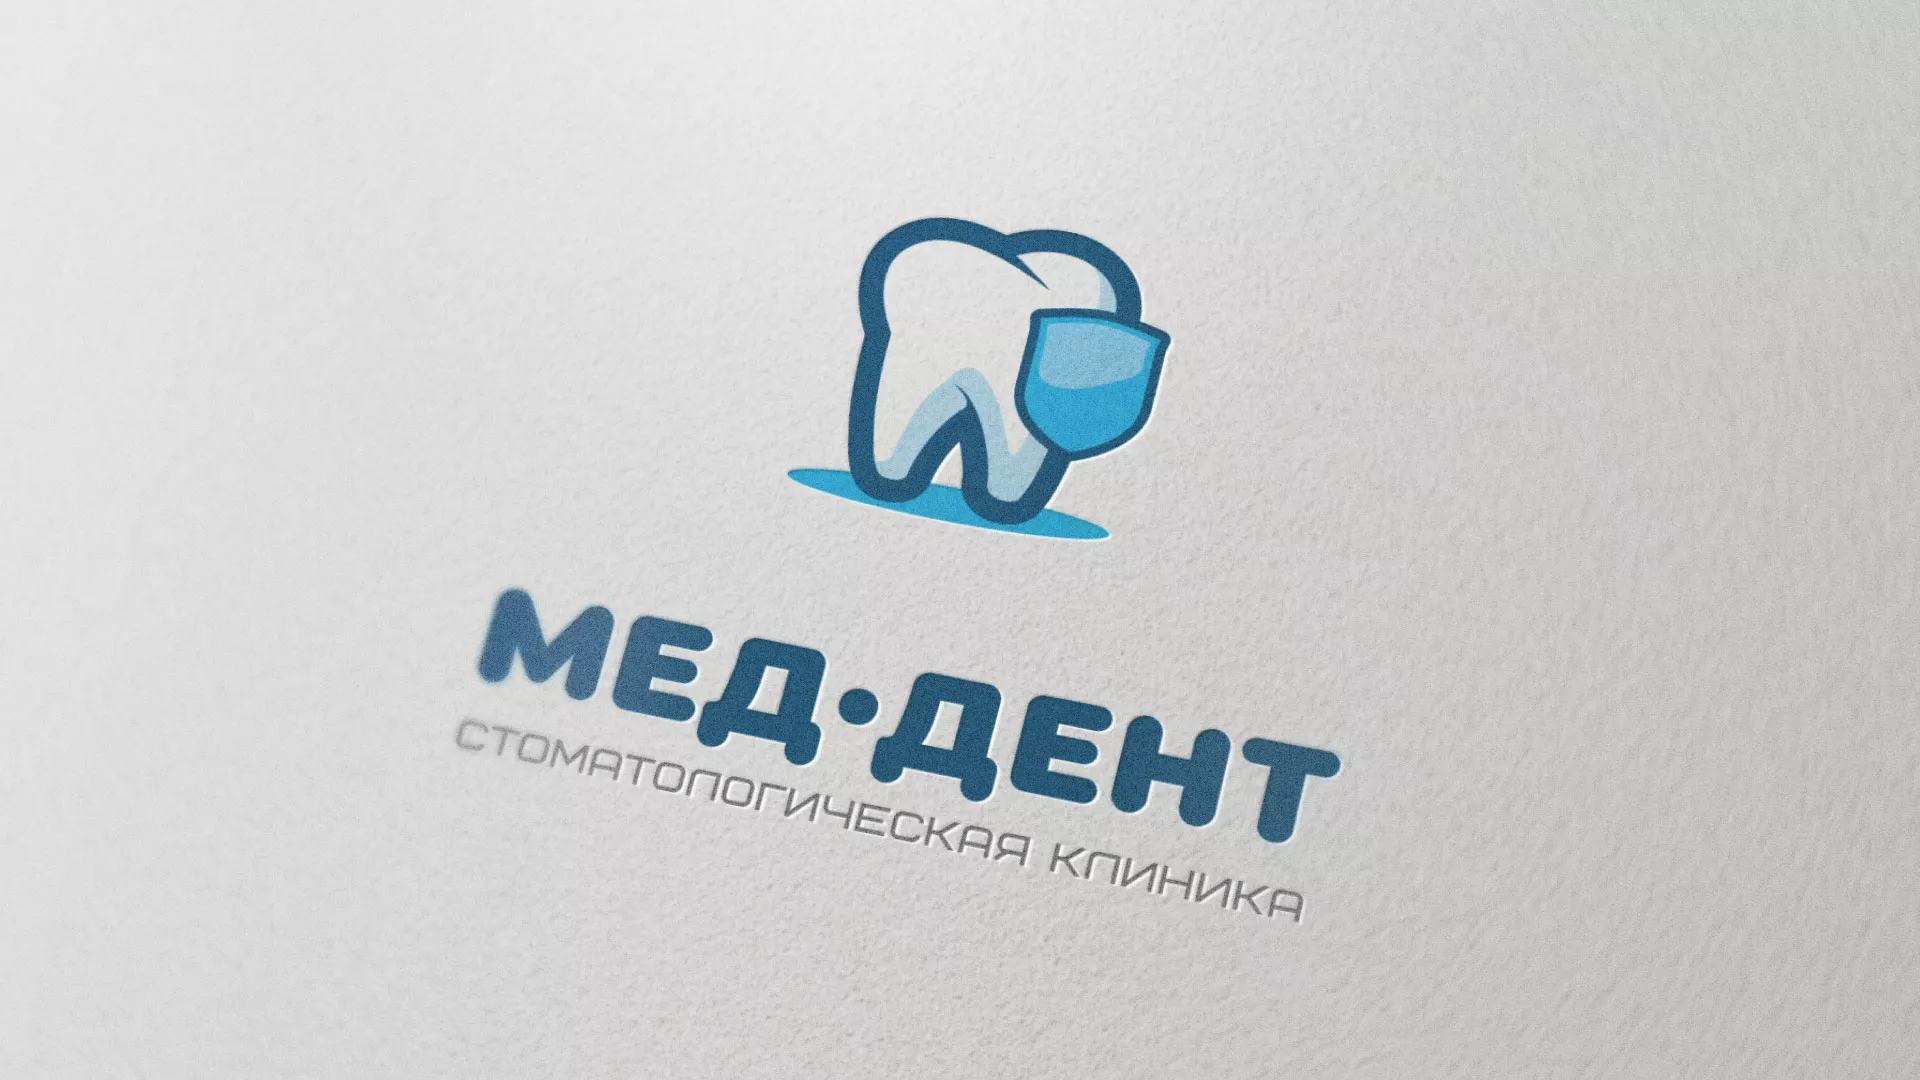 Разработка логотипа стоматологической клиники «МЕД-ДЕНТ» в Орехово-Зуево